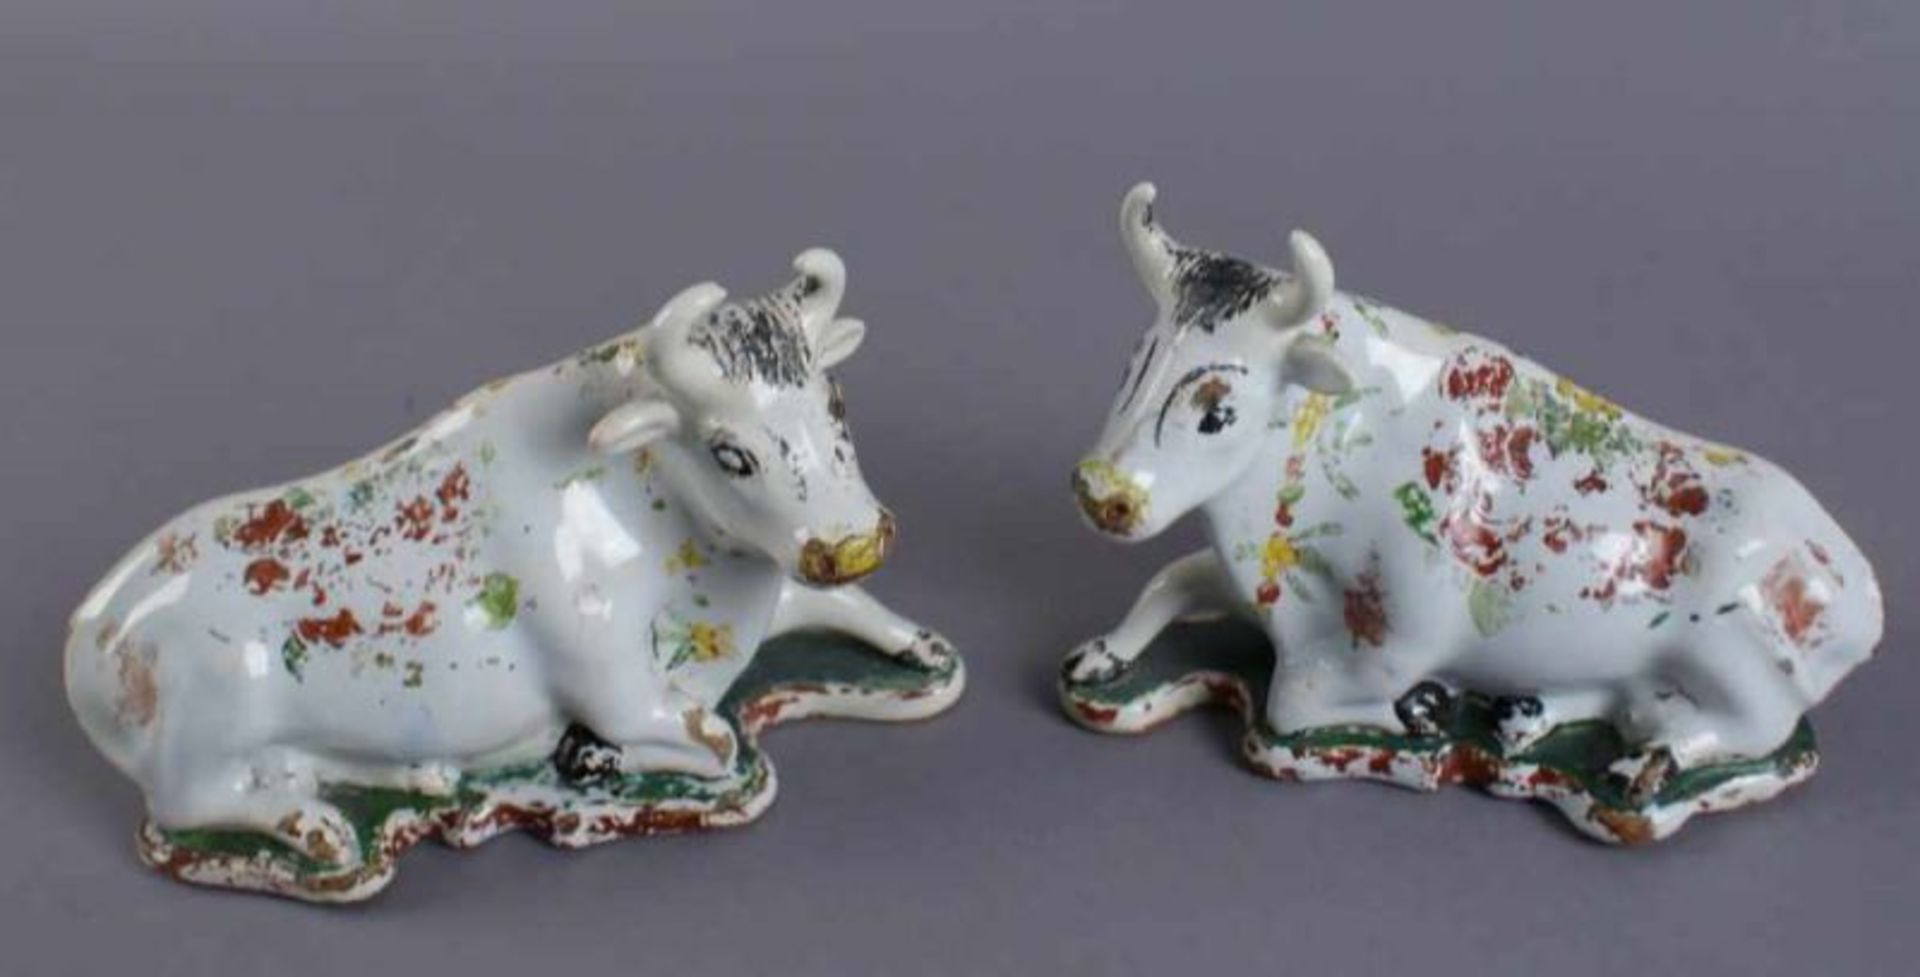 Zwei Kühe, Delft, bunt glasierte Keramik, 18. JH, alte Restaurierung, 10x15,5 x7 cm 20.17 % buyer' - Bild 2 aus 12